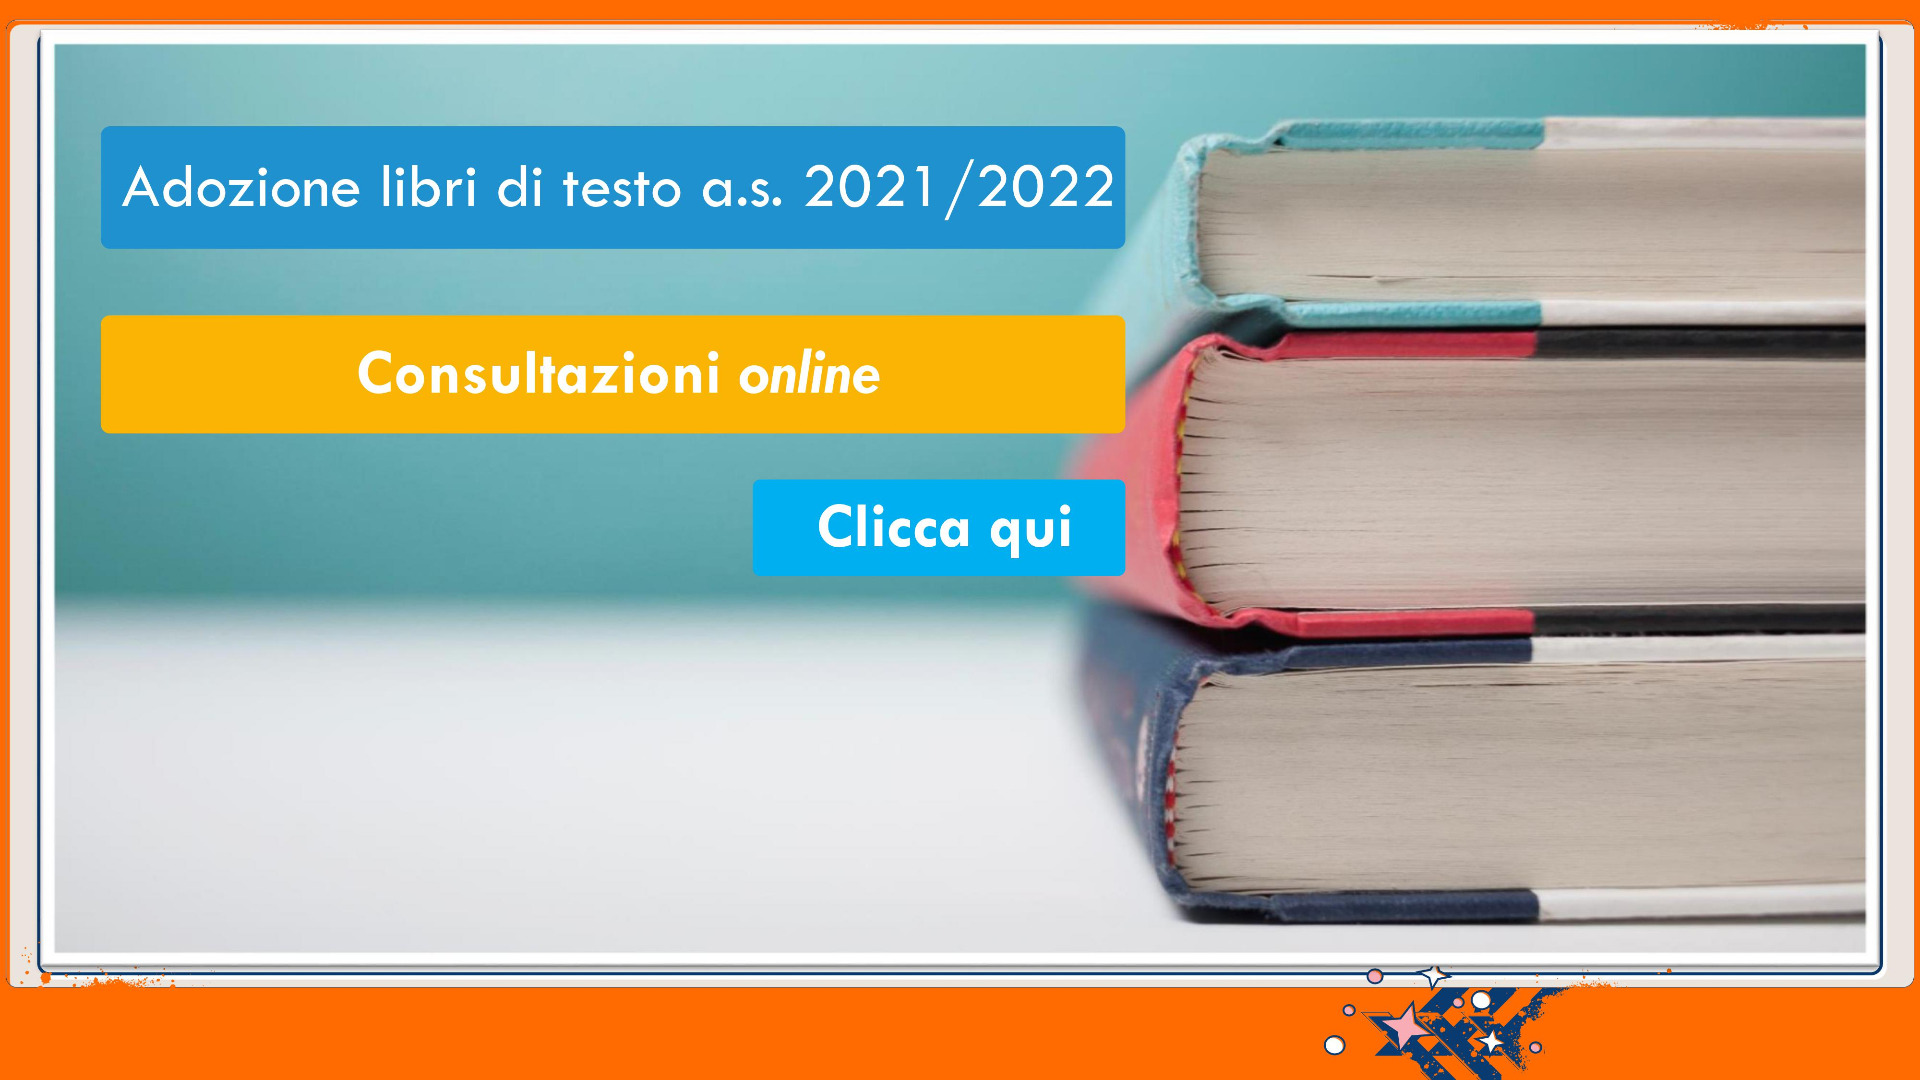 ADOZIONE LIBRI DI TESTO A.S. 2021/2022  - Consultazioni online